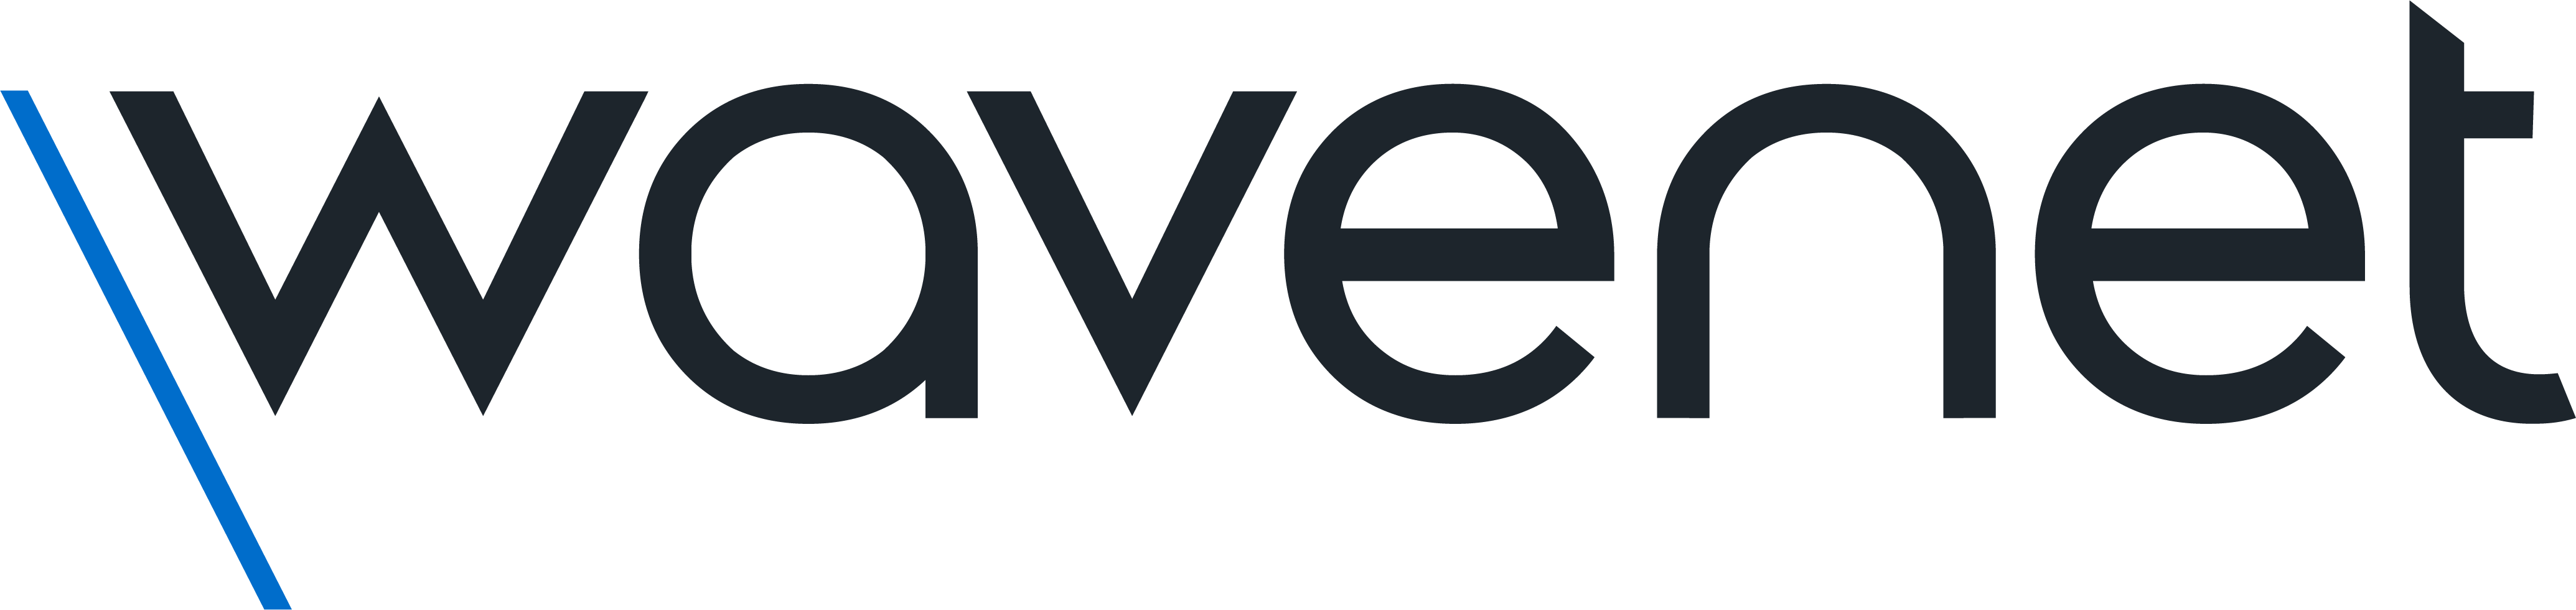 logo for Wavenet Limited